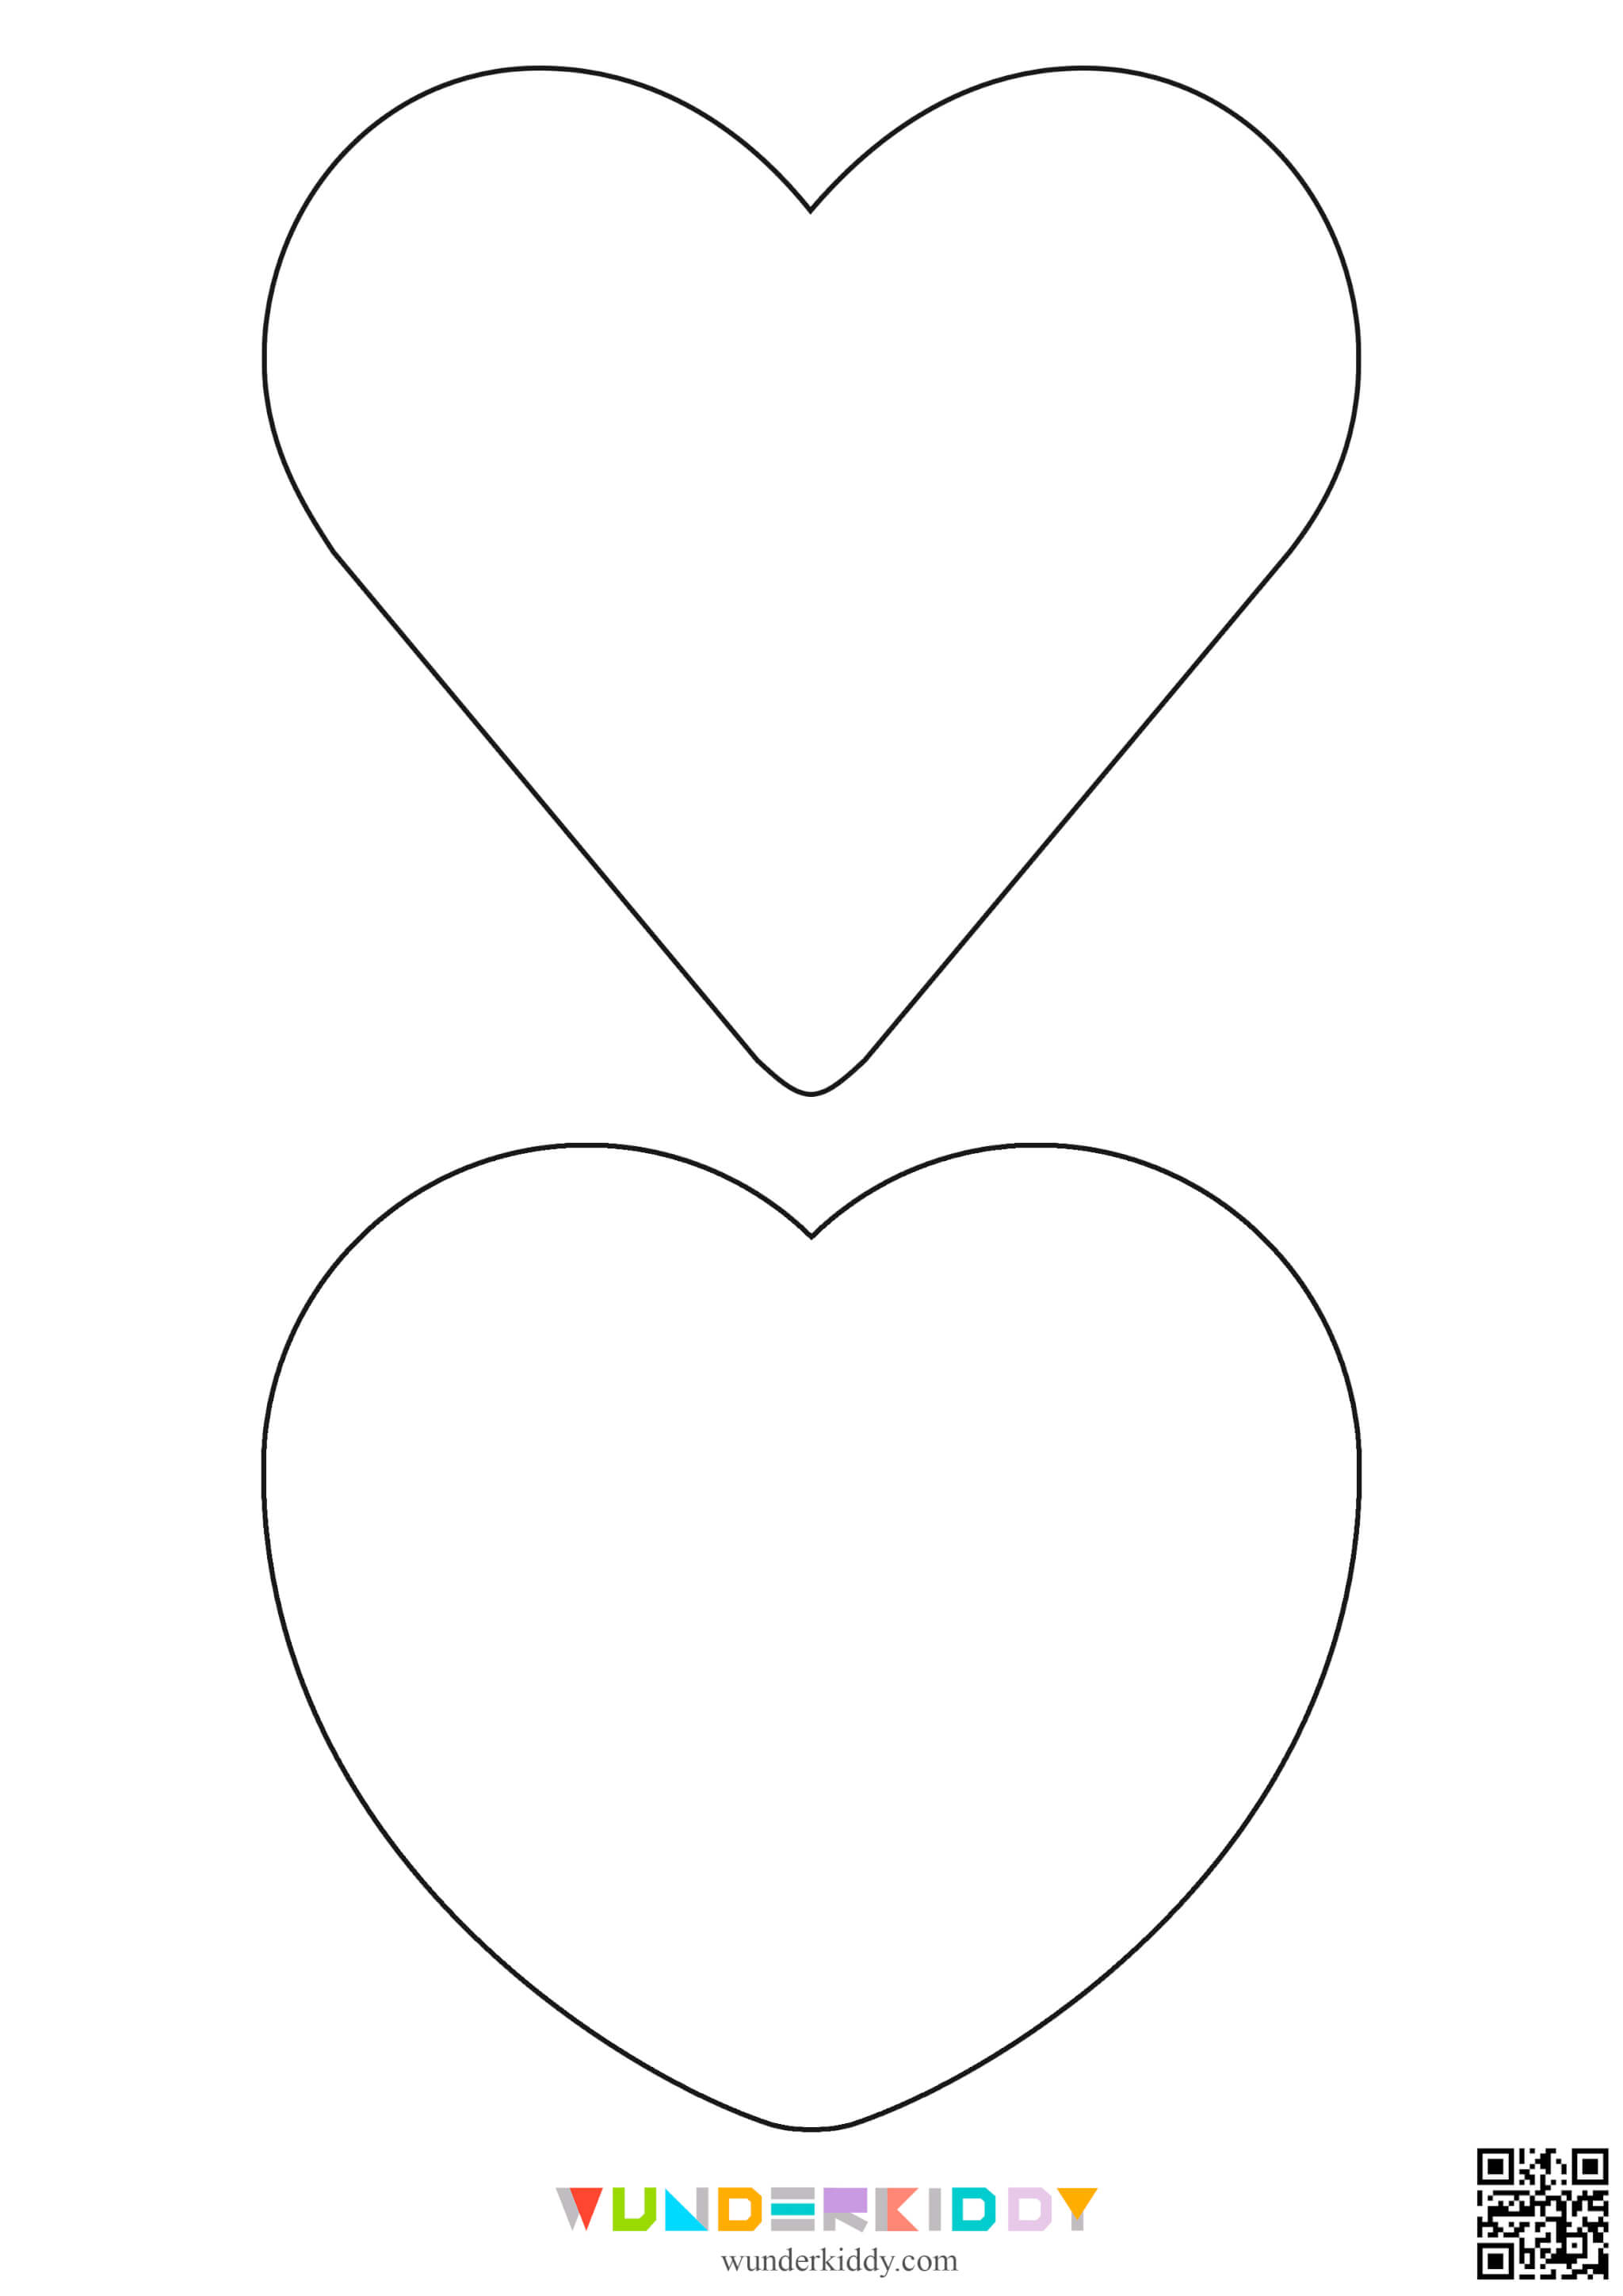 Контури та шаблони «Сердечка» для вирізання - Зображення 2